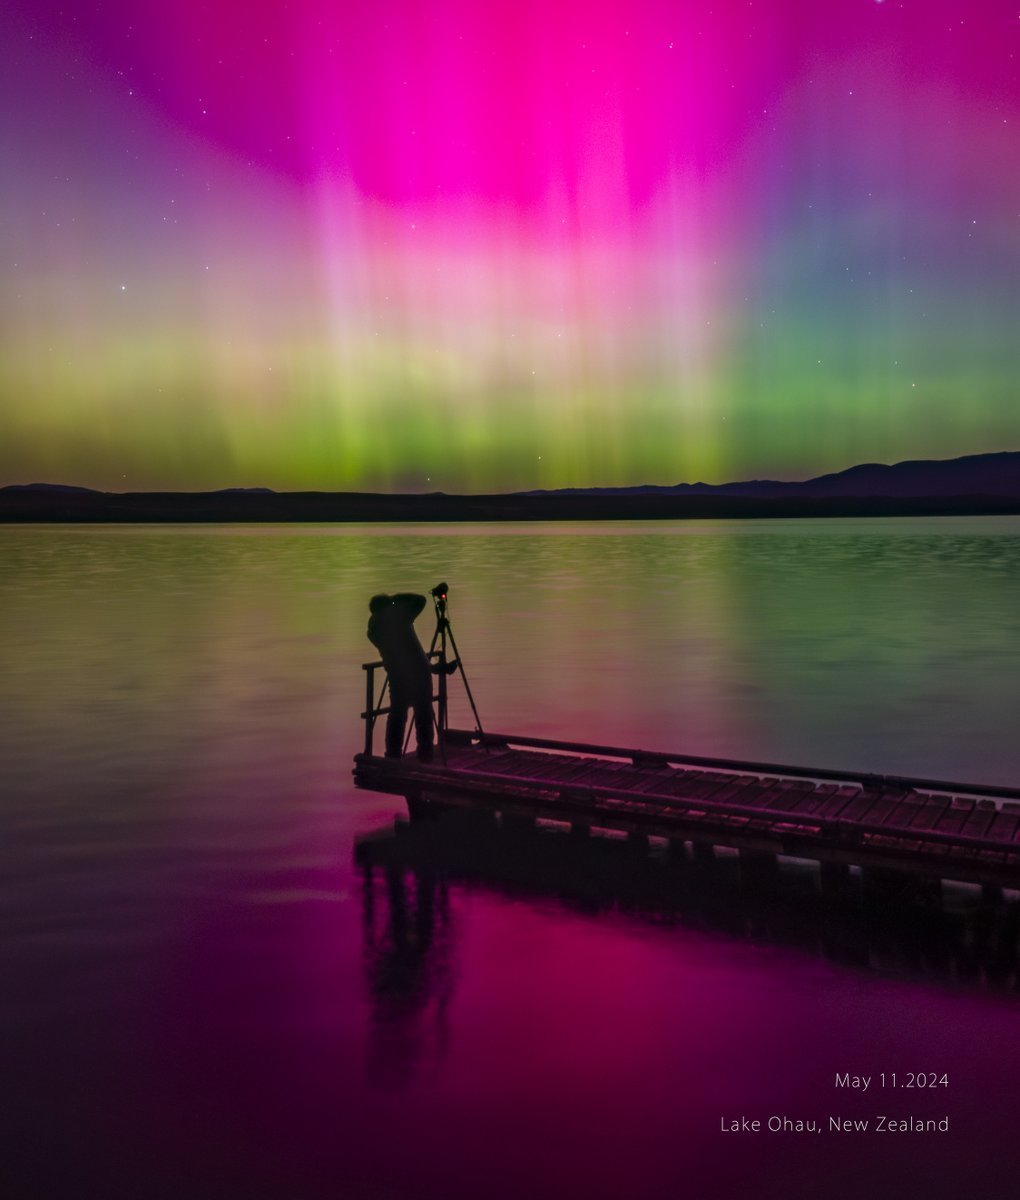 想像を絶する光景の中に一晩中いました。 5月11日  Lake Ohau, New Zealand #adpro #aurora #低緯度オーロラ #磁気嵐 #SIGMA #オーロラ